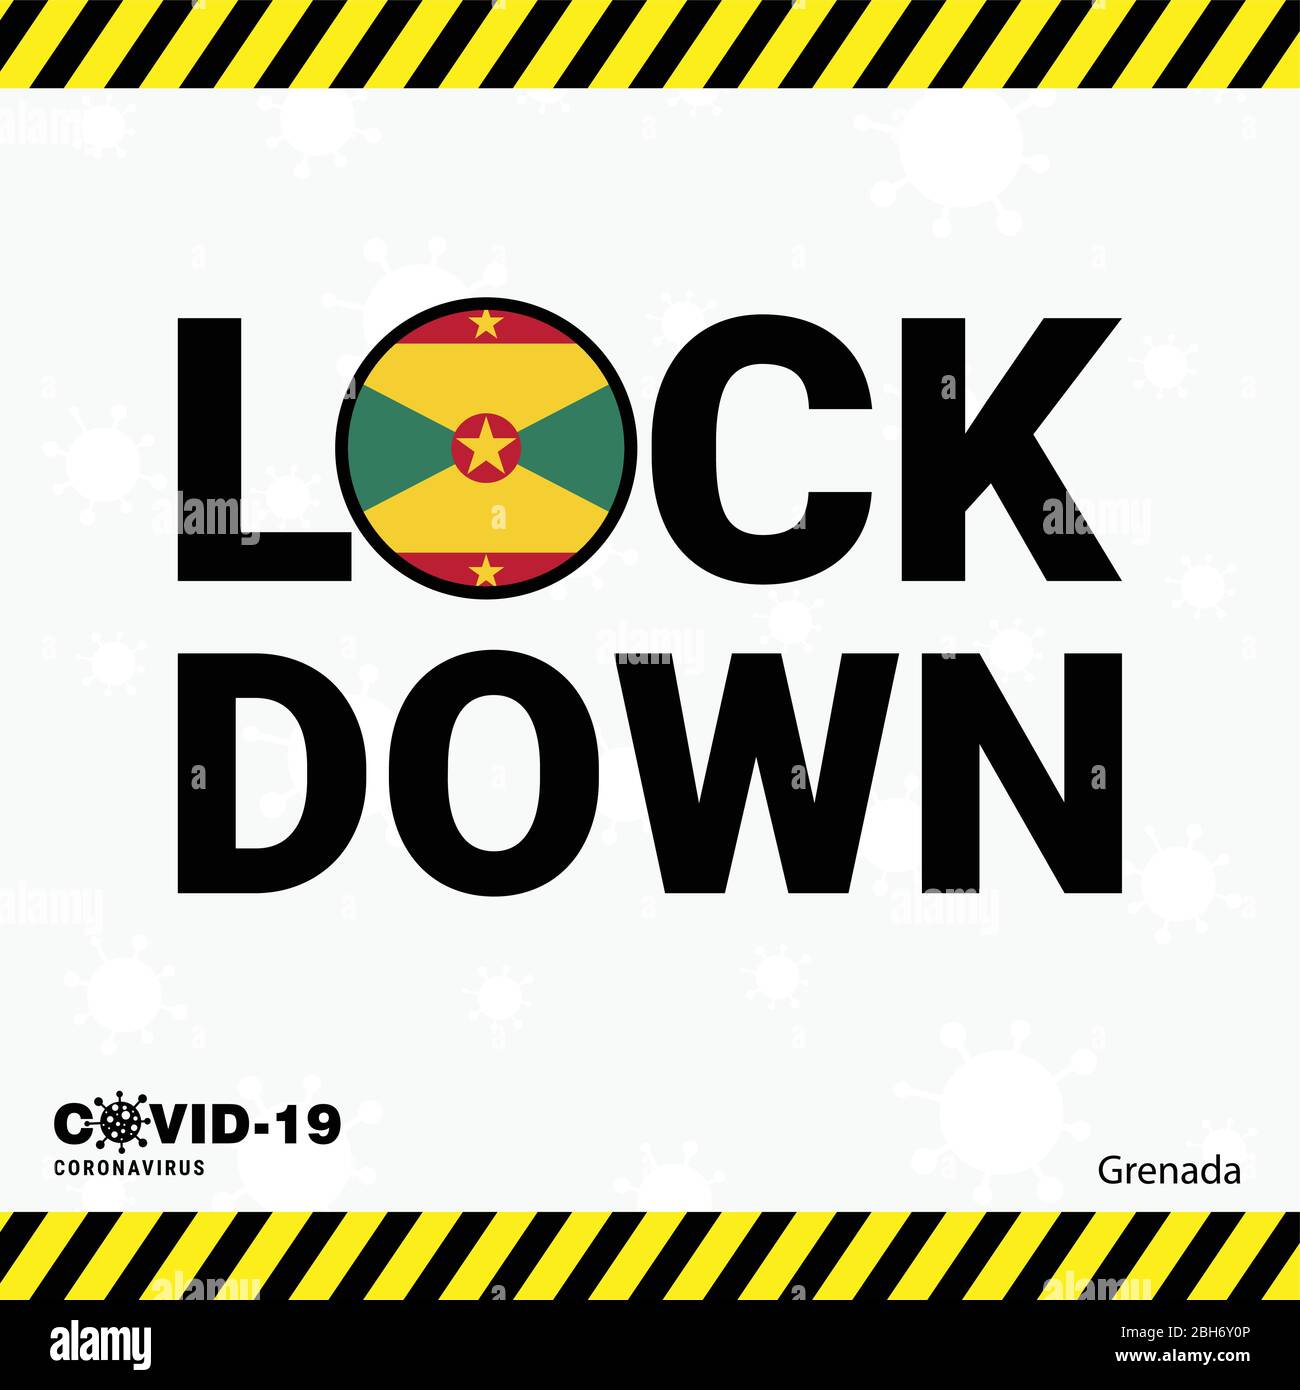 Coronavirus Grenada Lock DOwn Typography with country flag. Coronavirus pandemic Lock Down Design Stock Vector